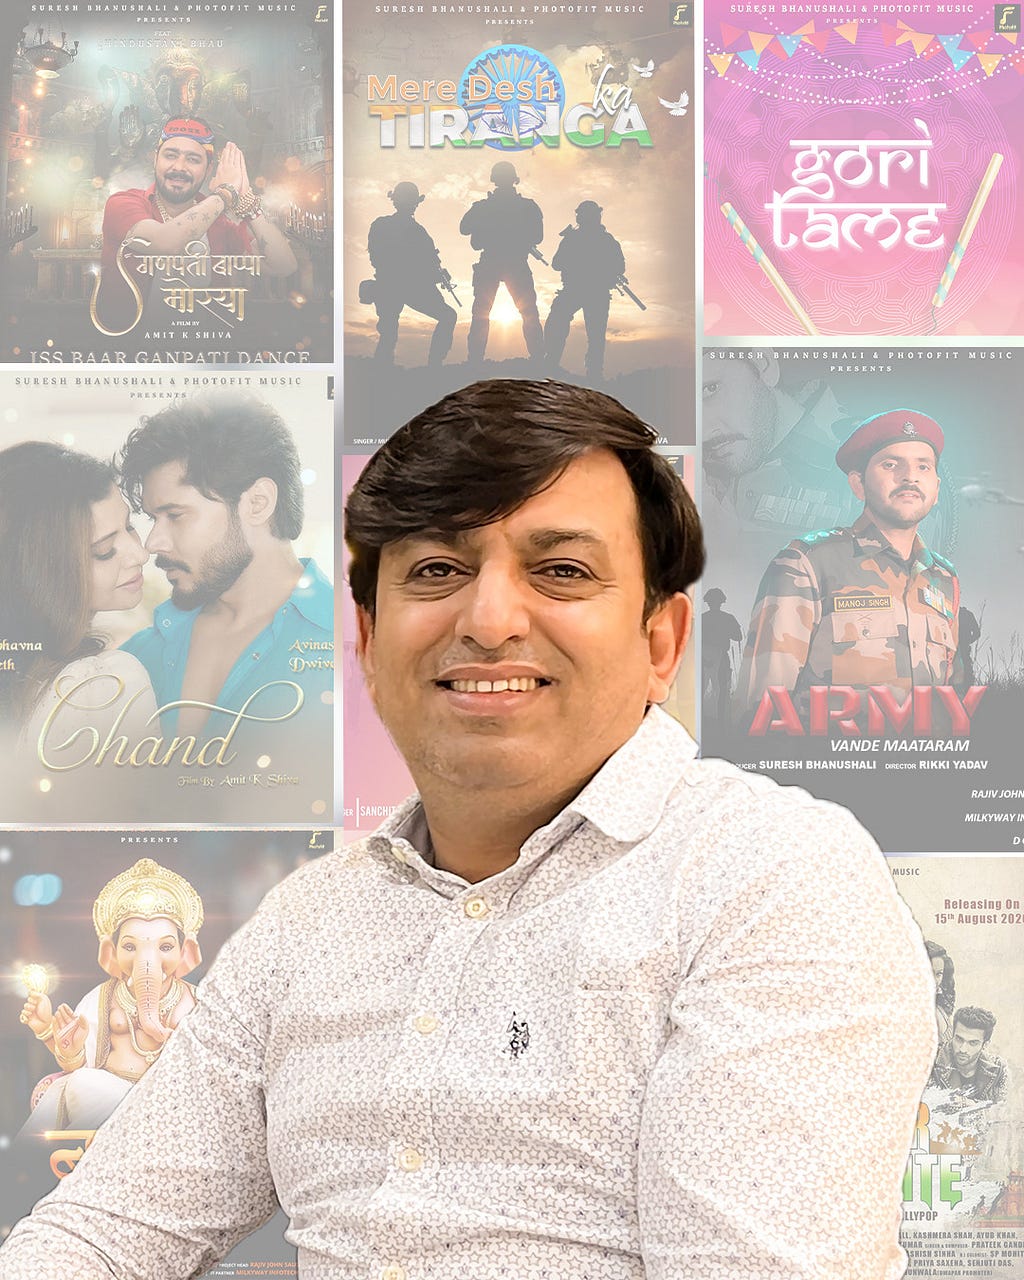 Producer Suresh Bhanushali